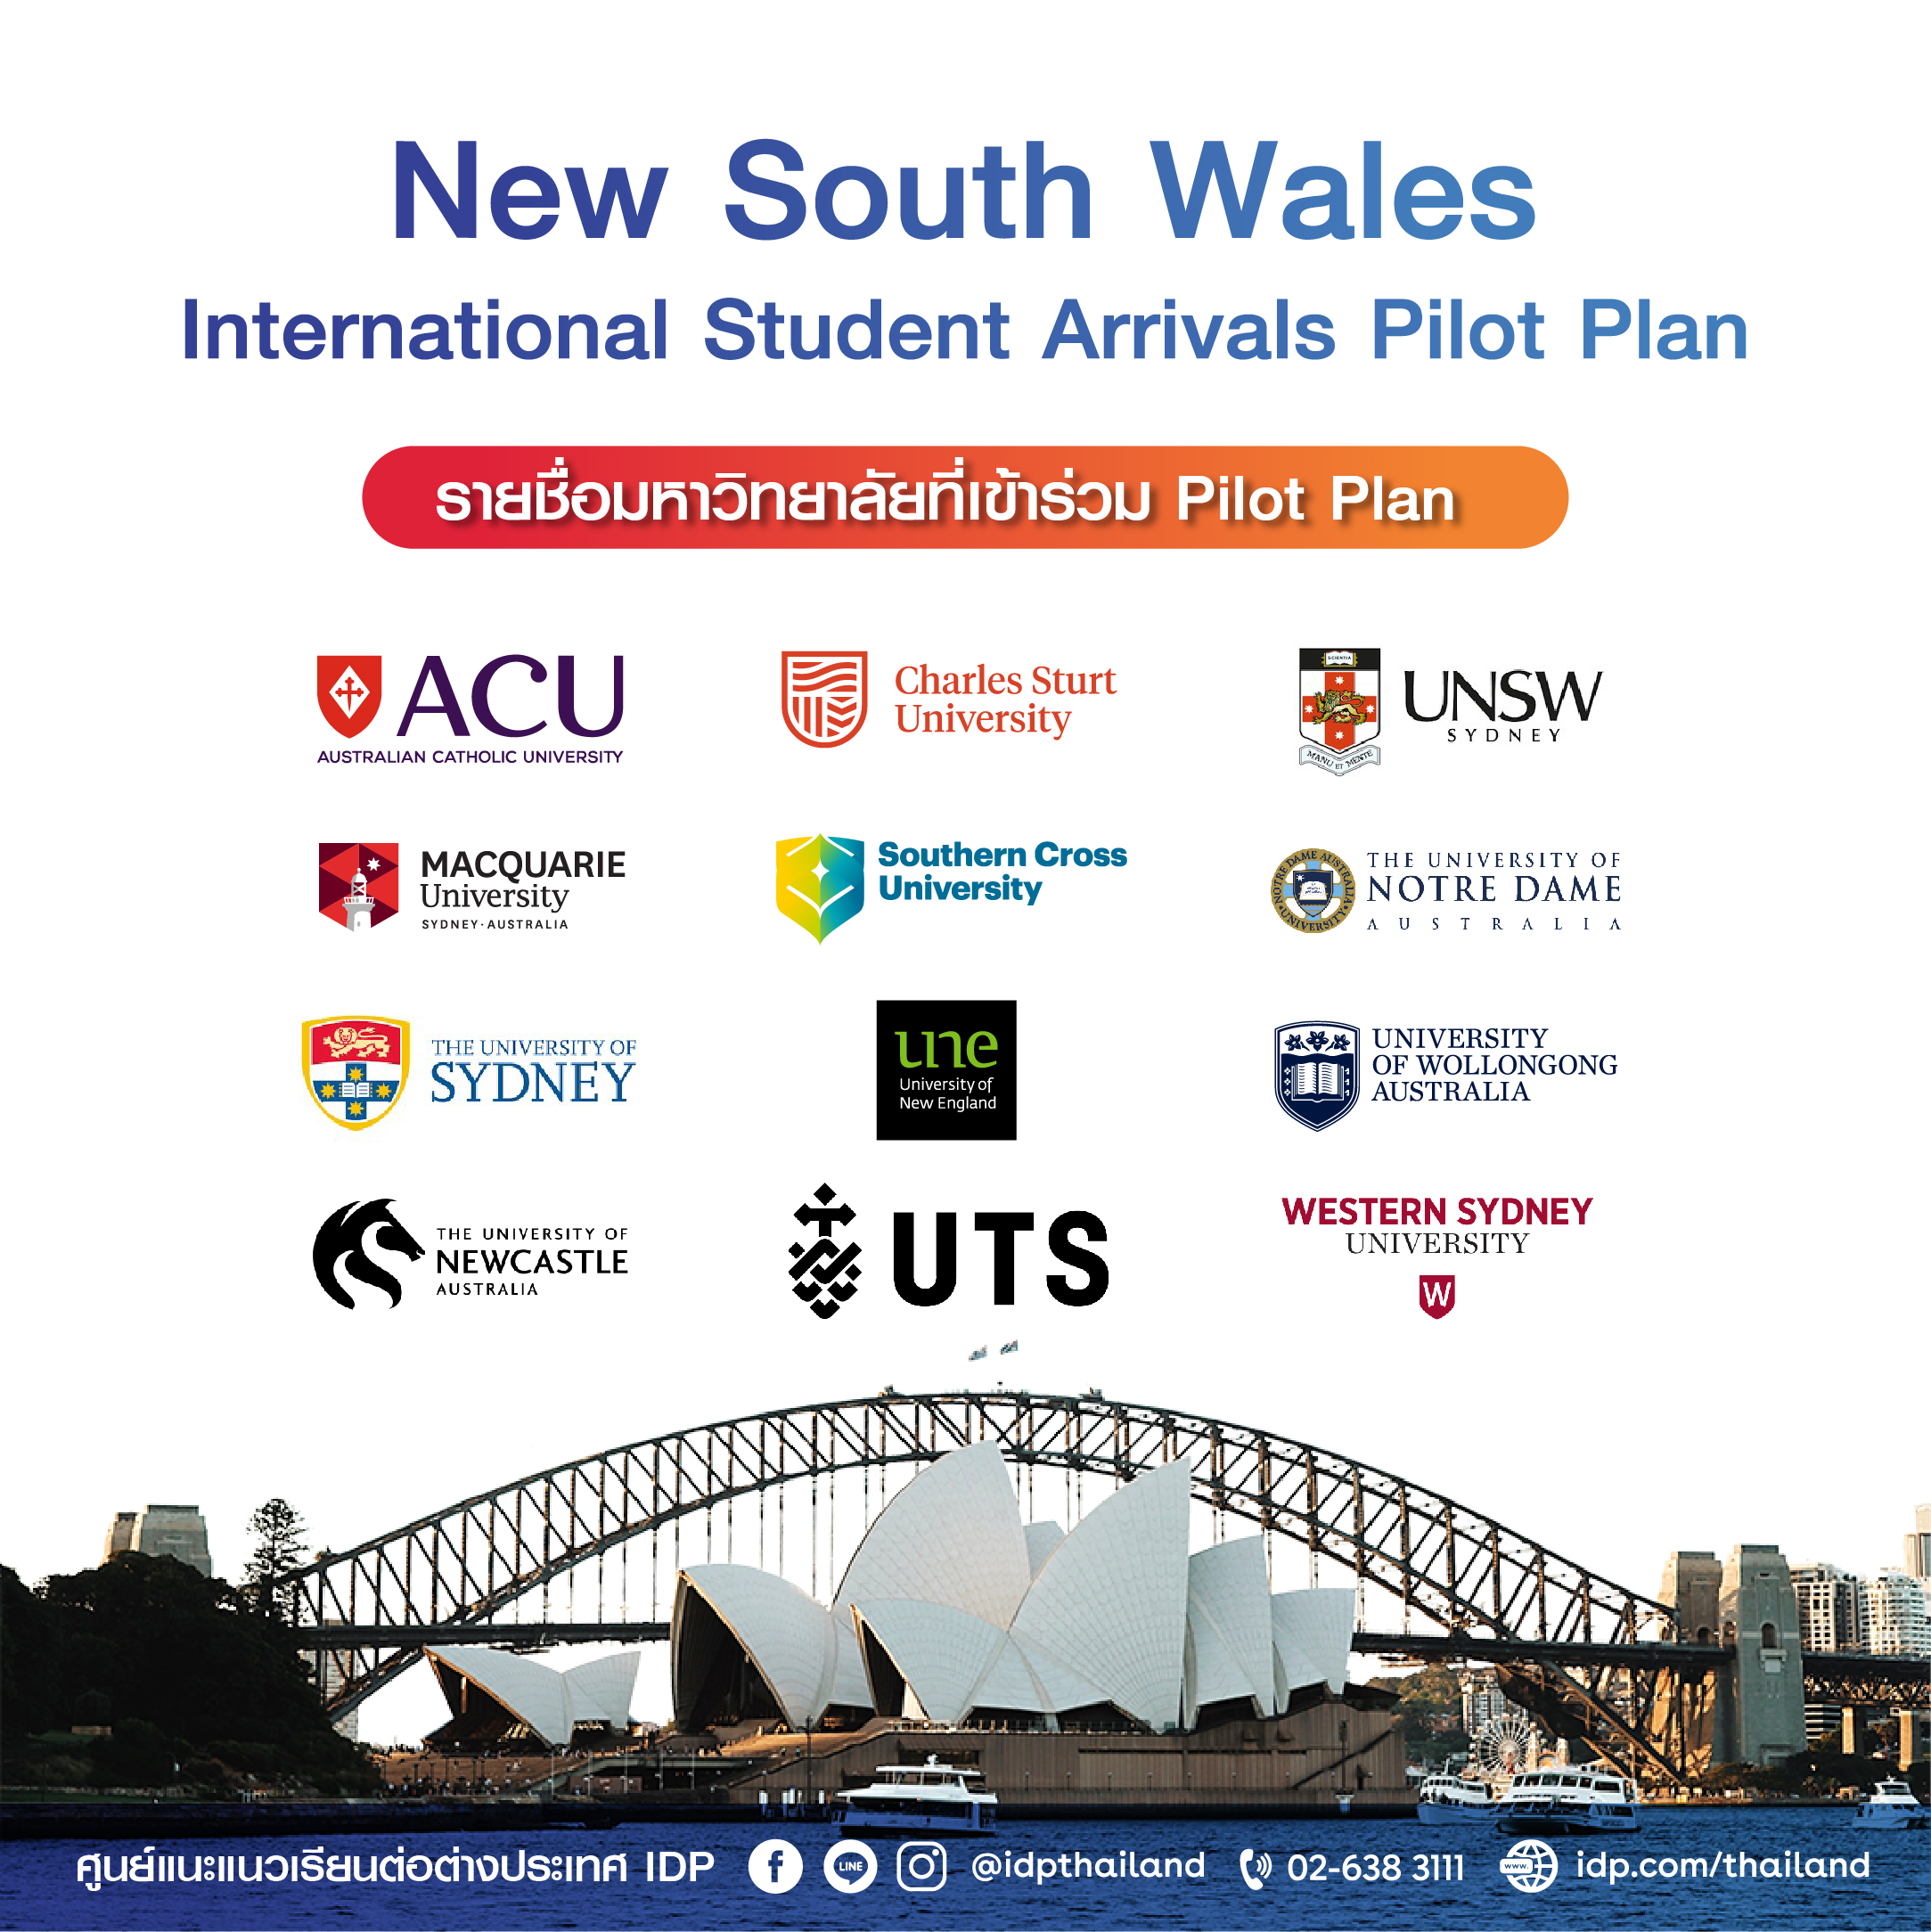 5 ข้อต้องรู้ แผนนำร่องเตรียมรับนักศึกษาต่างชาติบินกลับเข้ารัฐนิวเซาท์เวลส์ ประเทศออสเตรเลีย